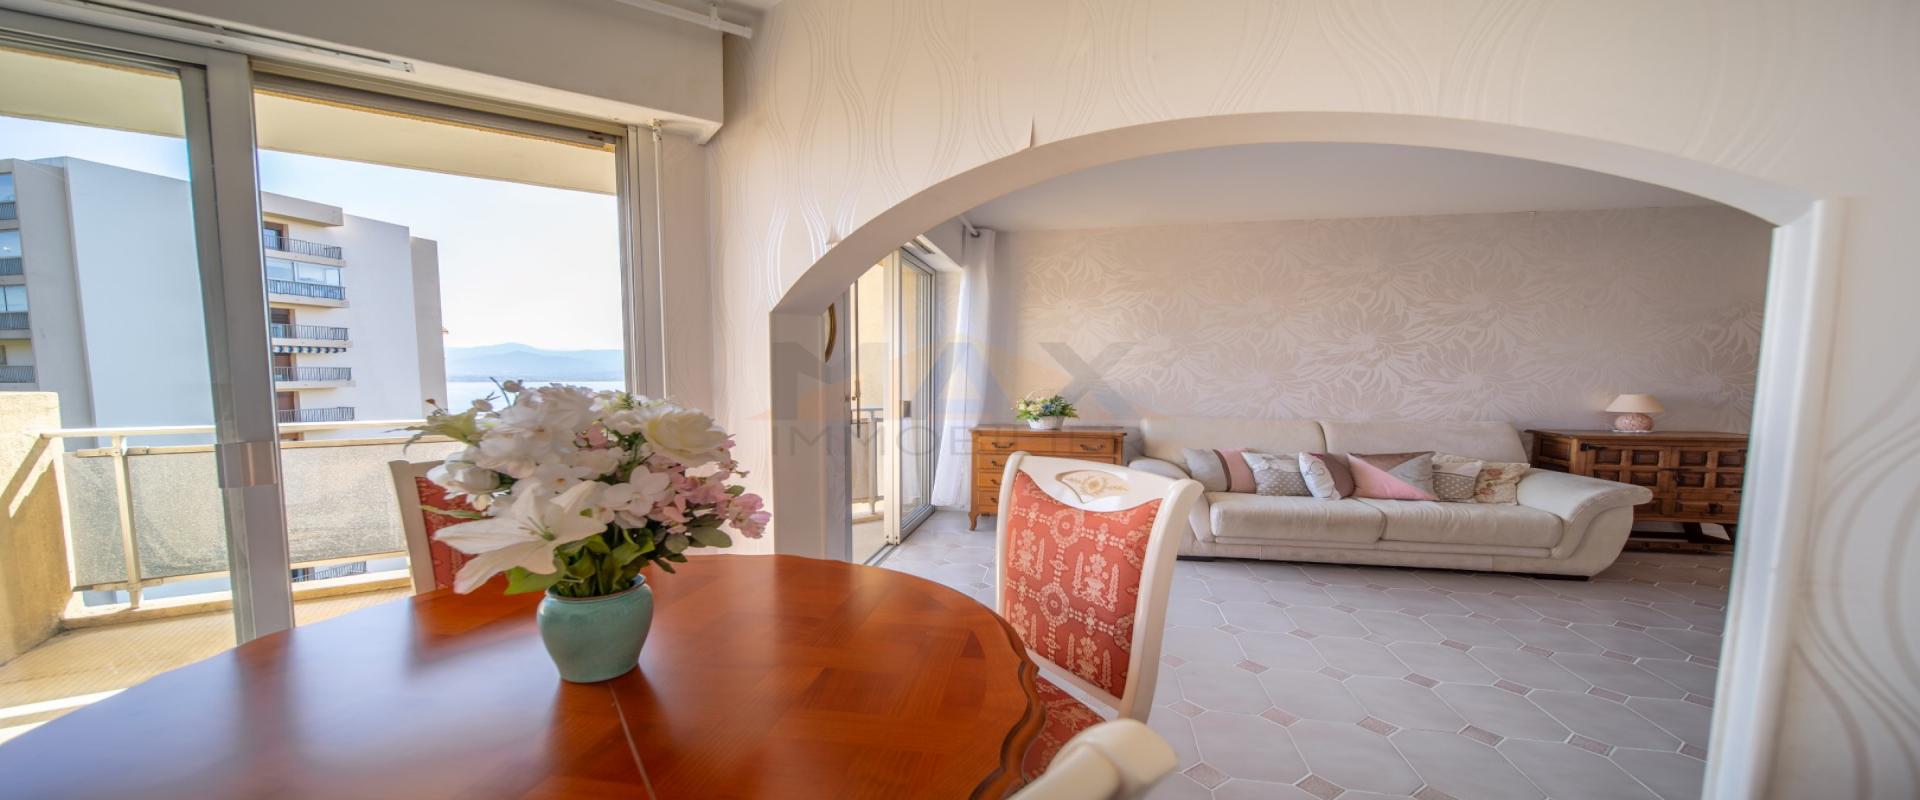 En Corse, à Ajaccio, dans le secteur Balestrino / Salario, vente d'un appartement de 33 m² avec vue mer.